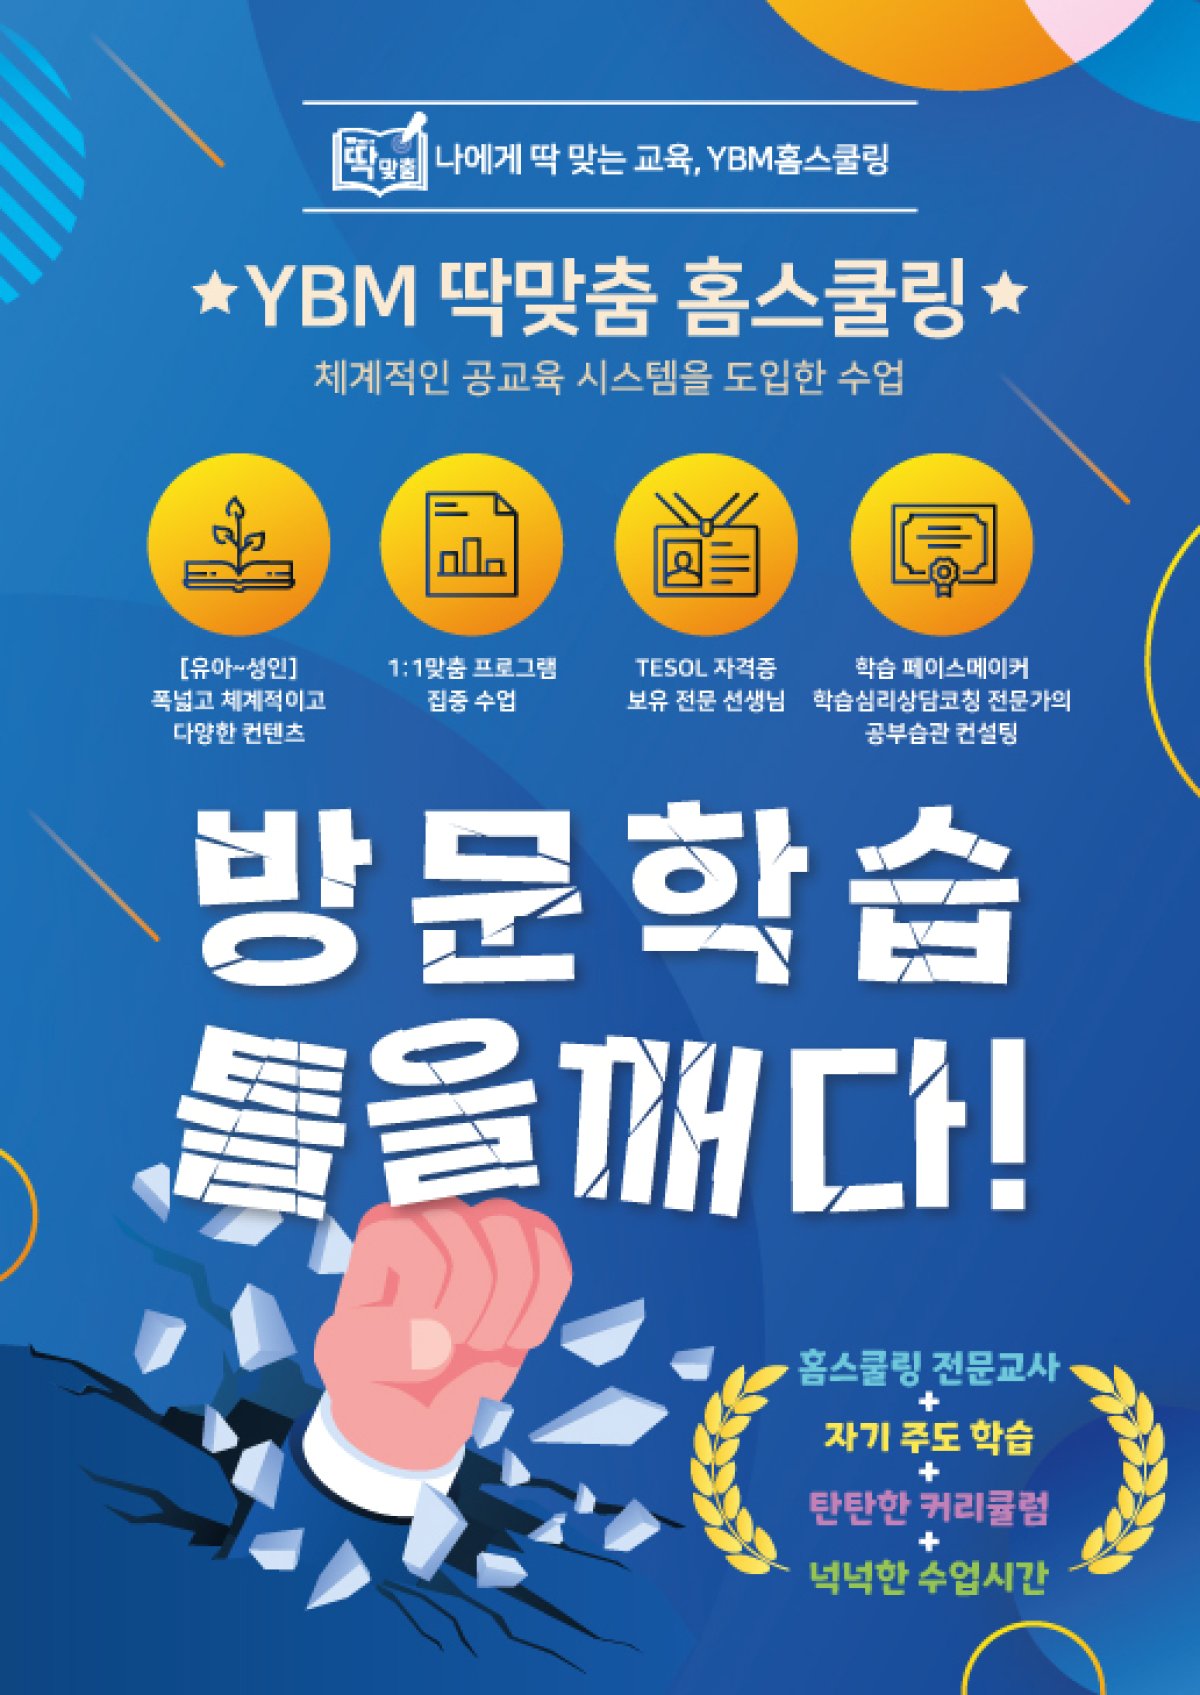 ‘YBM 딱맞춤 홈스쿨링’ (YBM교육 제공)